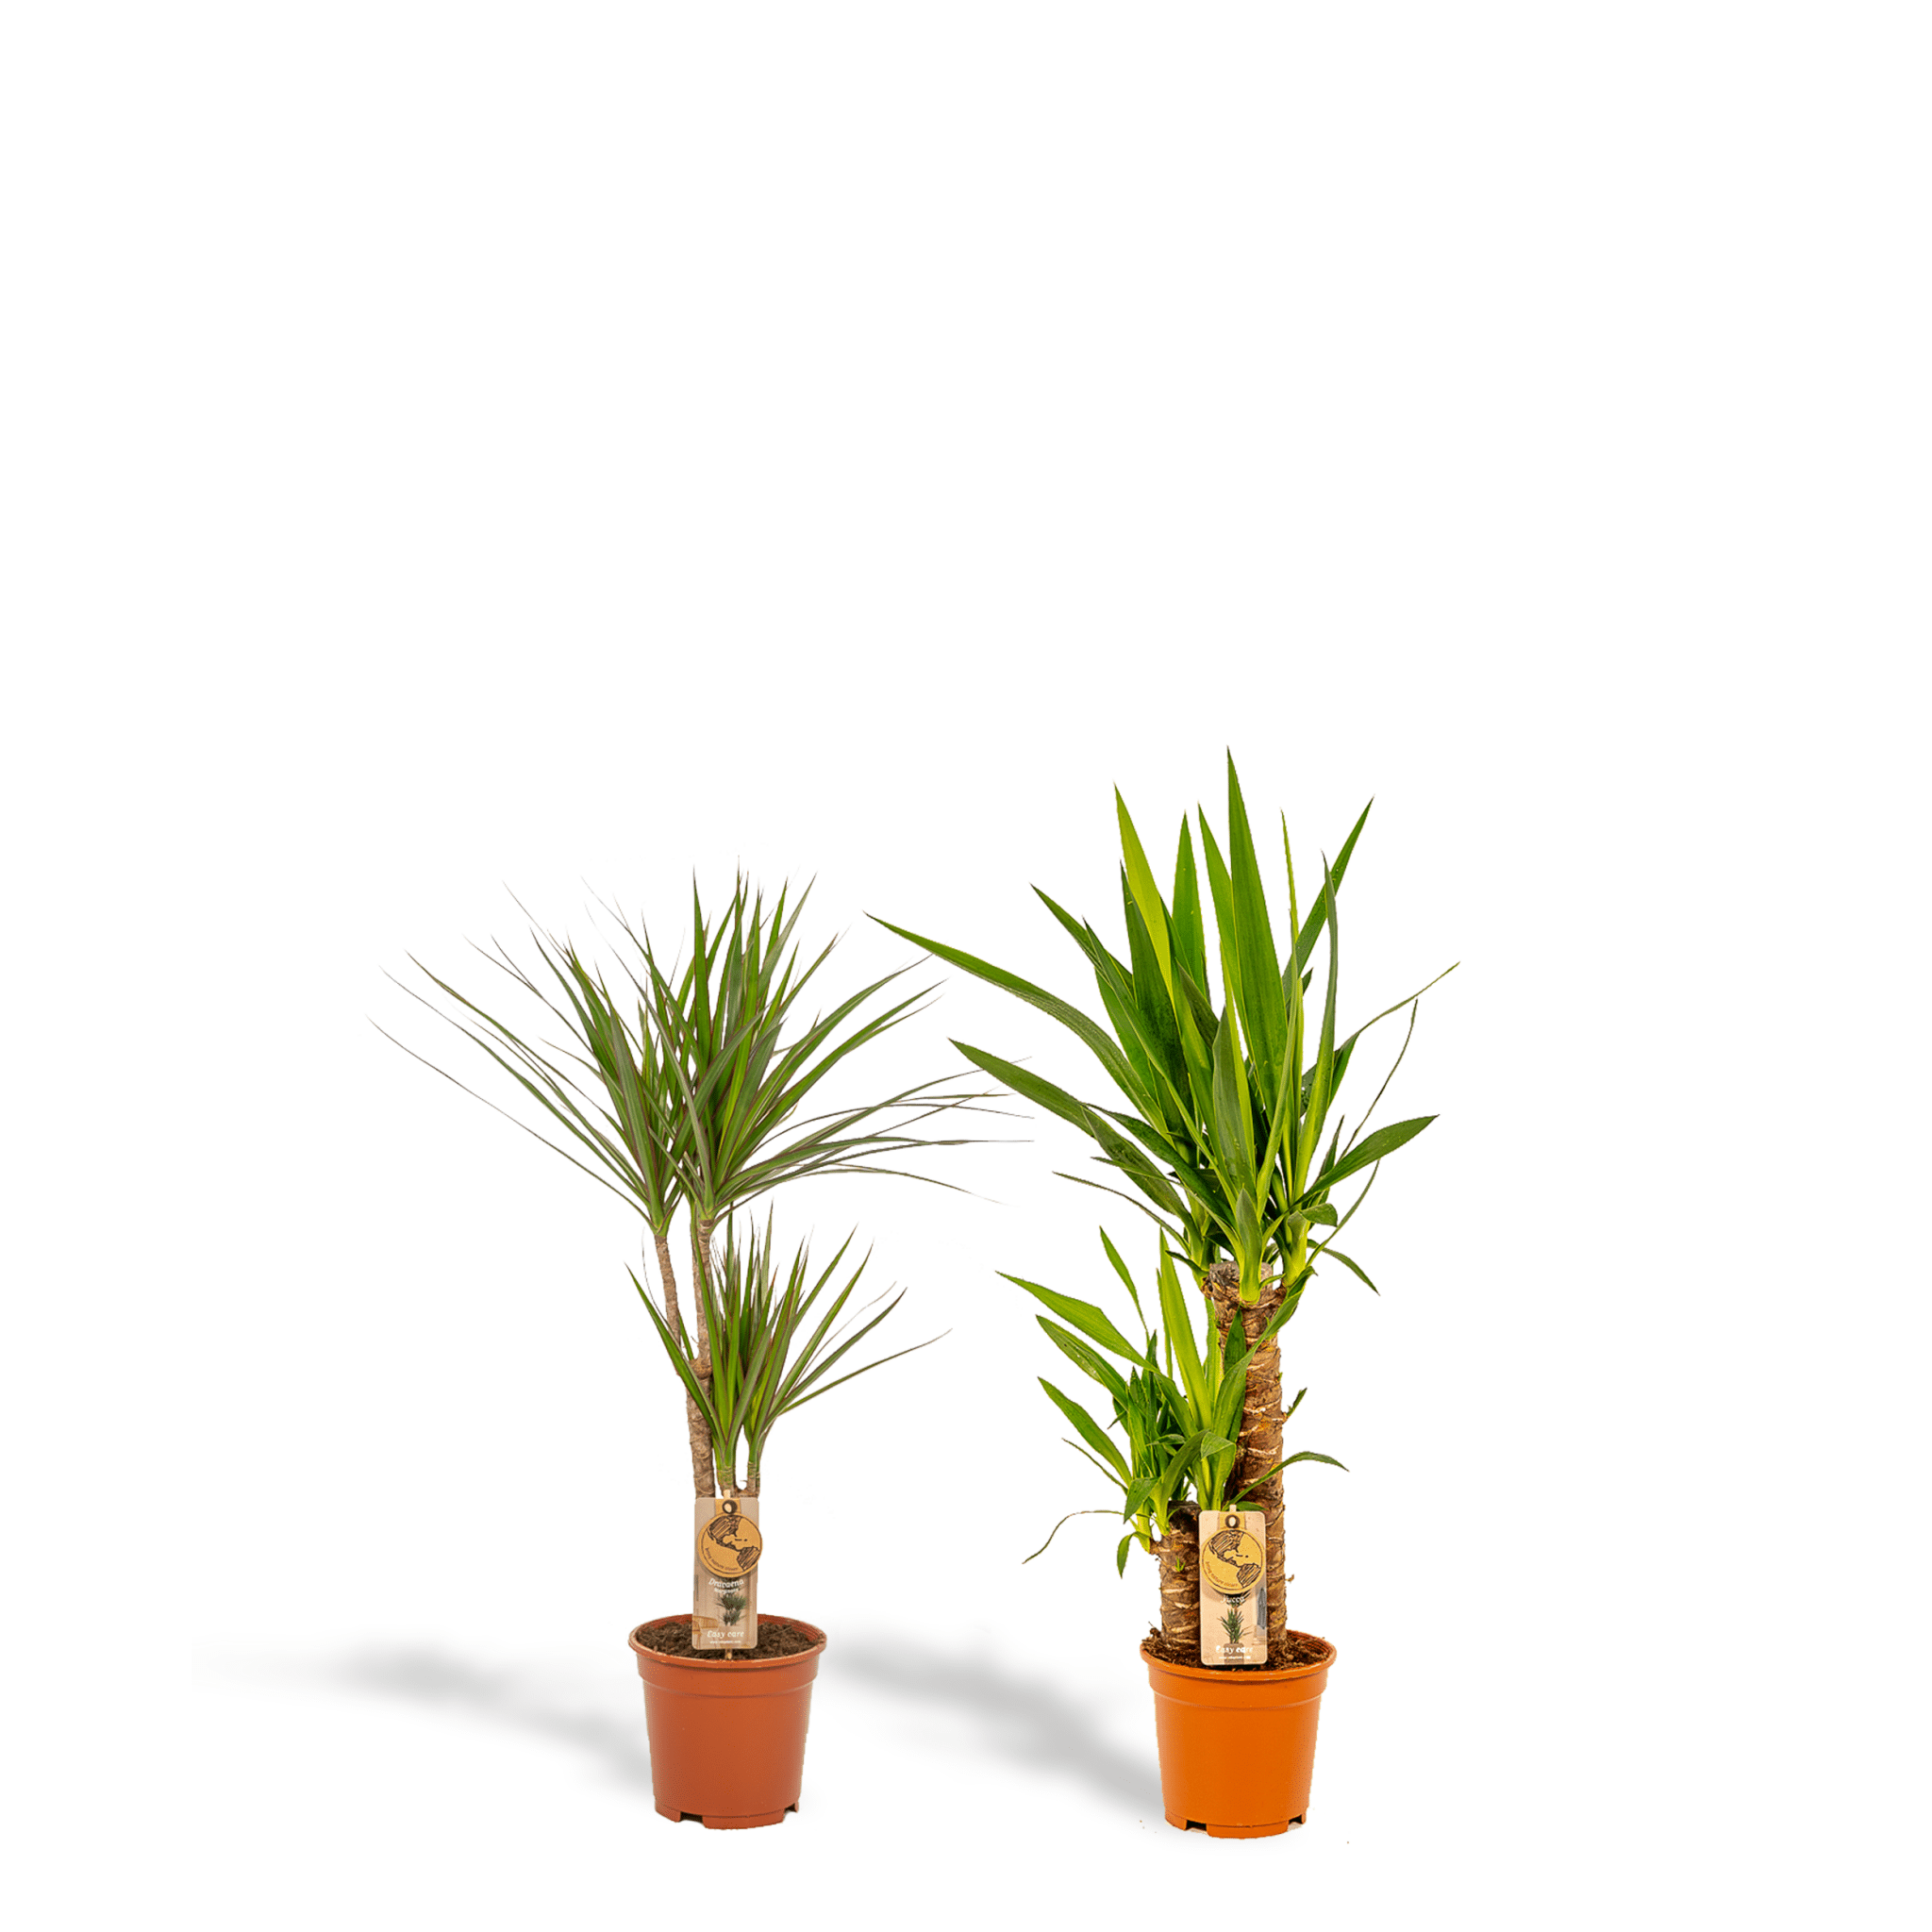 Plante d'intérieur - yucca, dracaena, duo de plantes h90cm 90cm